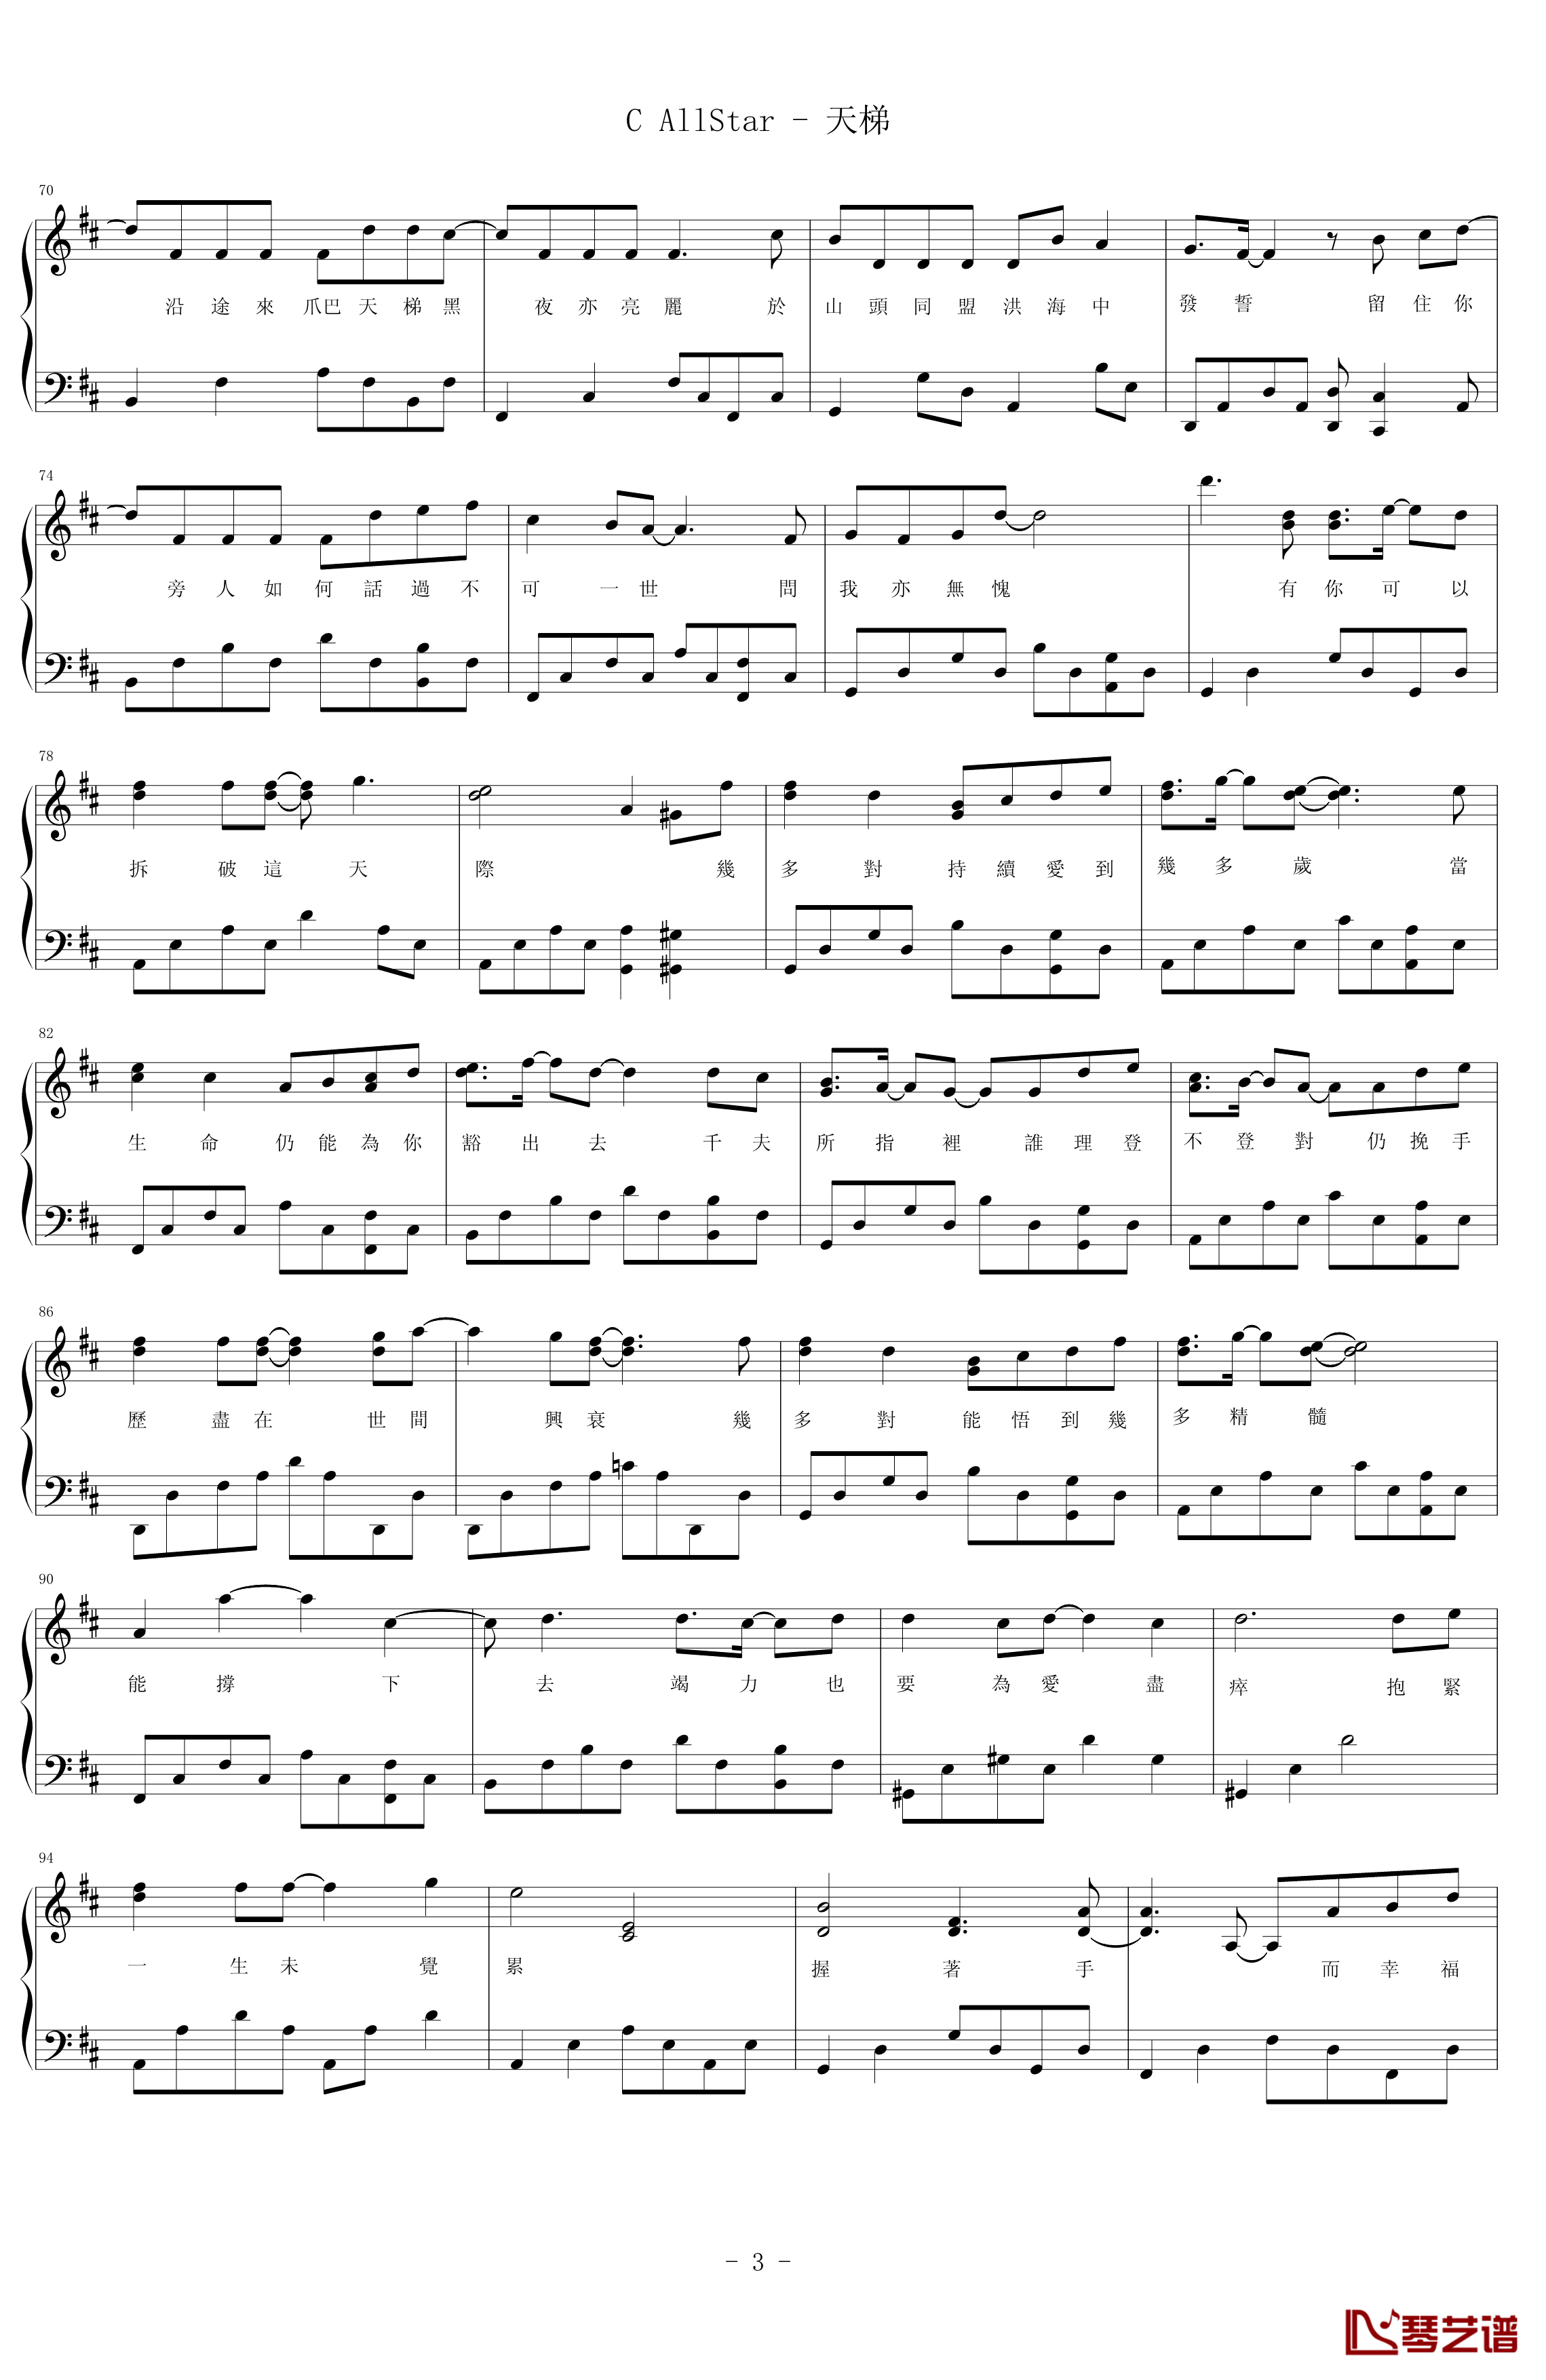 天梯钢琴谱-C AllStar3